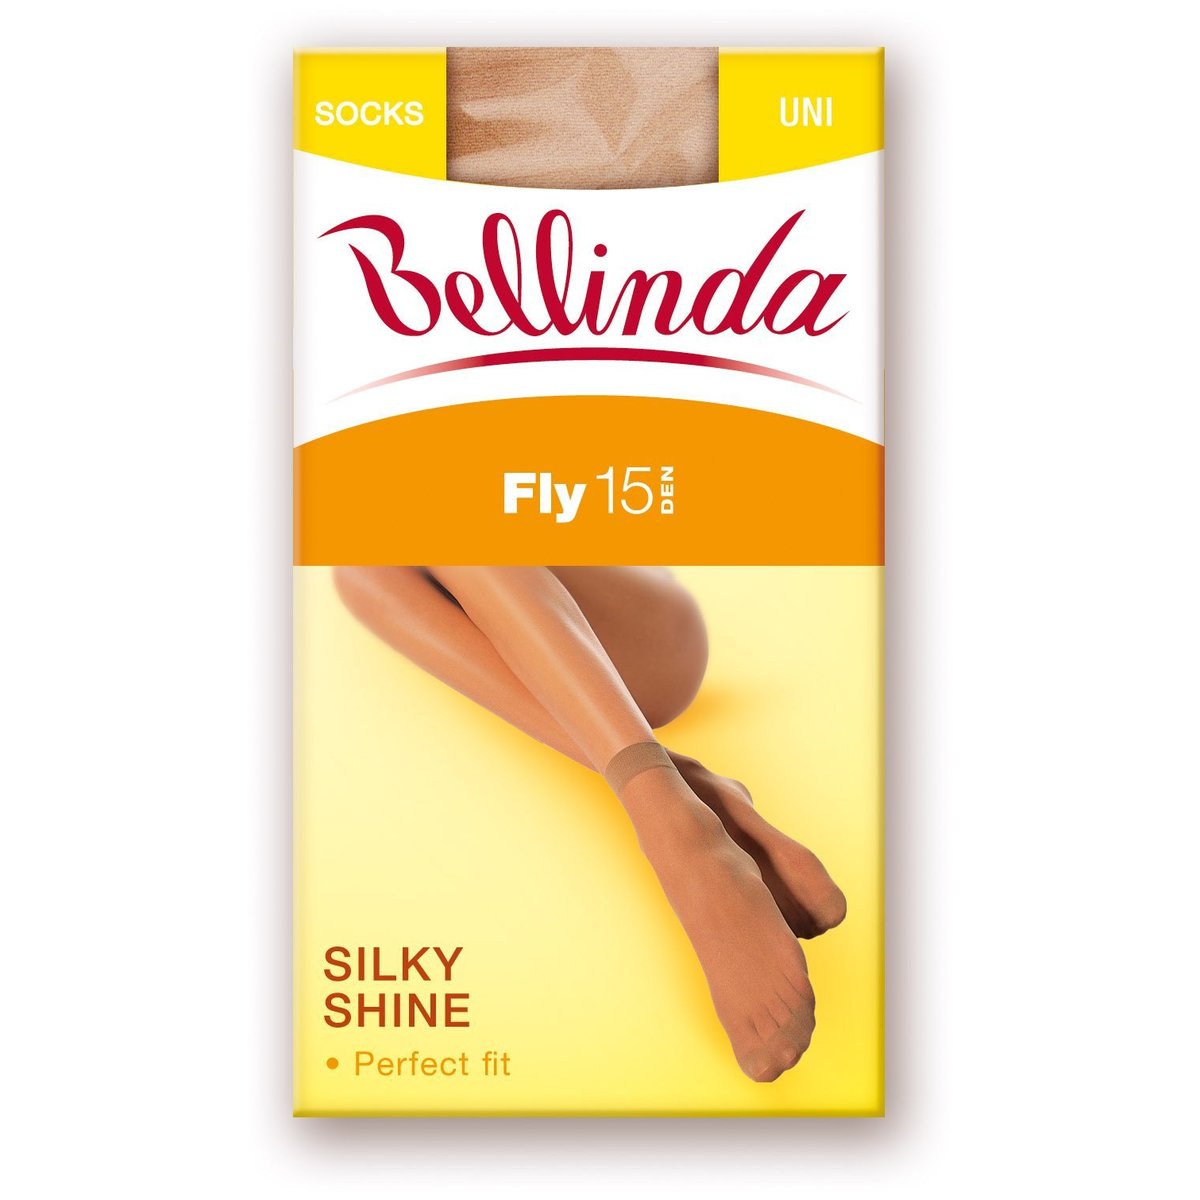 Bellinda Silonkové ponožky FLY 15, tělové, vel. UNI